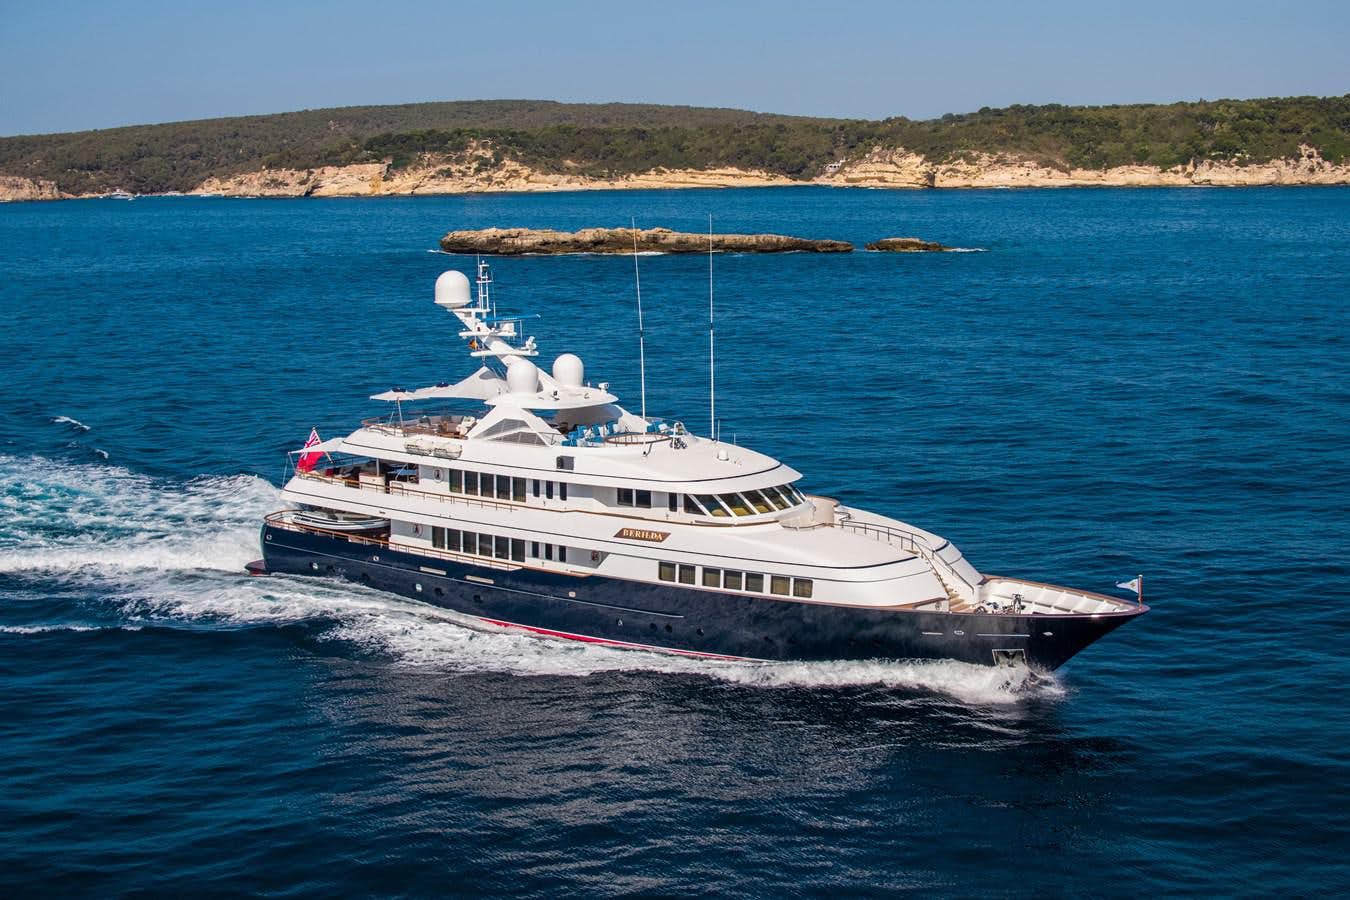 Berilda
Yacht for Sale